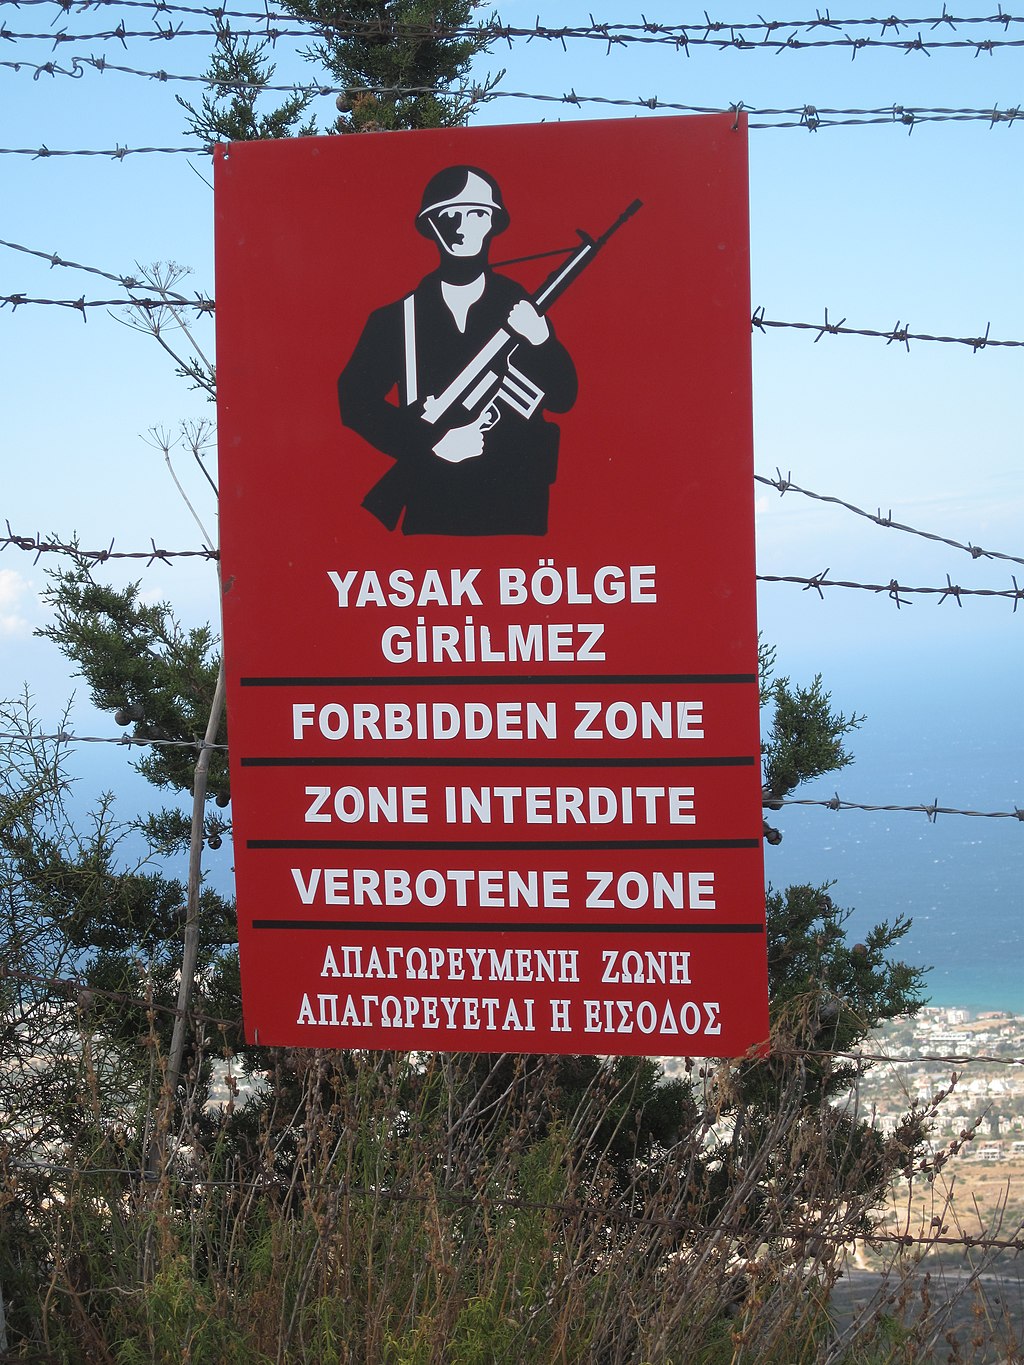 sign that says yasak bölge girilmez